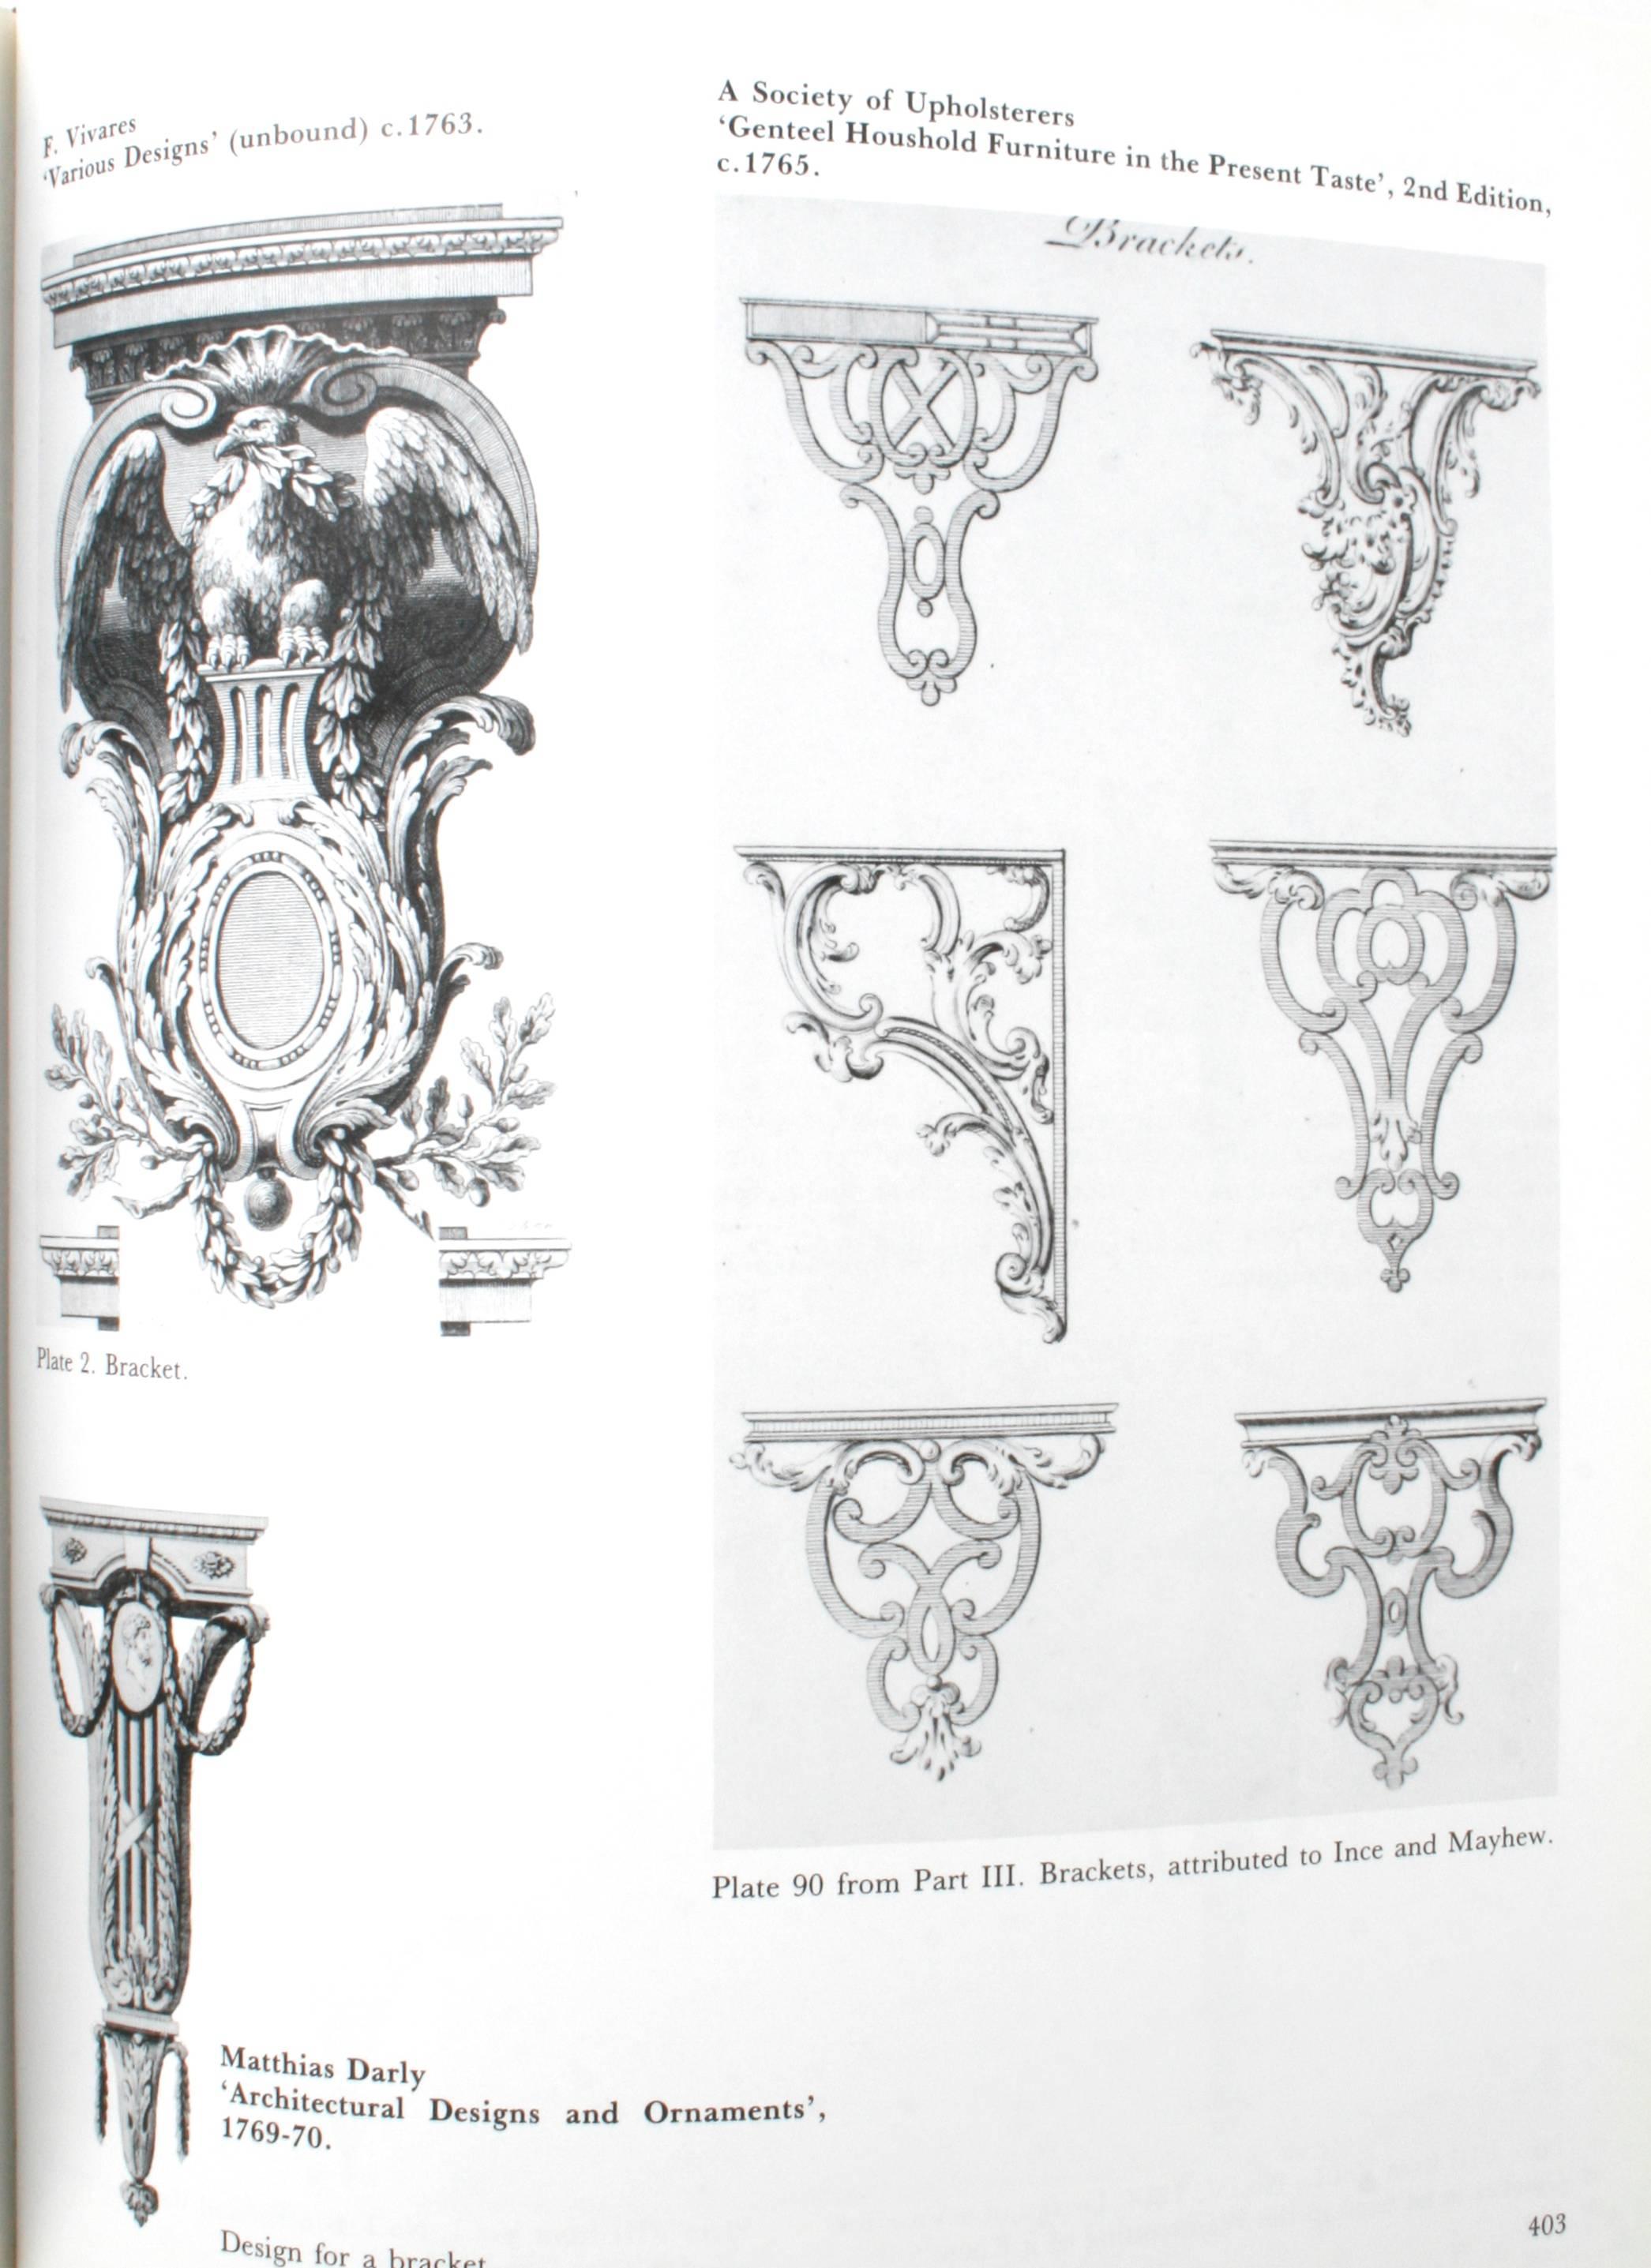 Pictorial Dictionary of British 18th Century Furniture Design 6